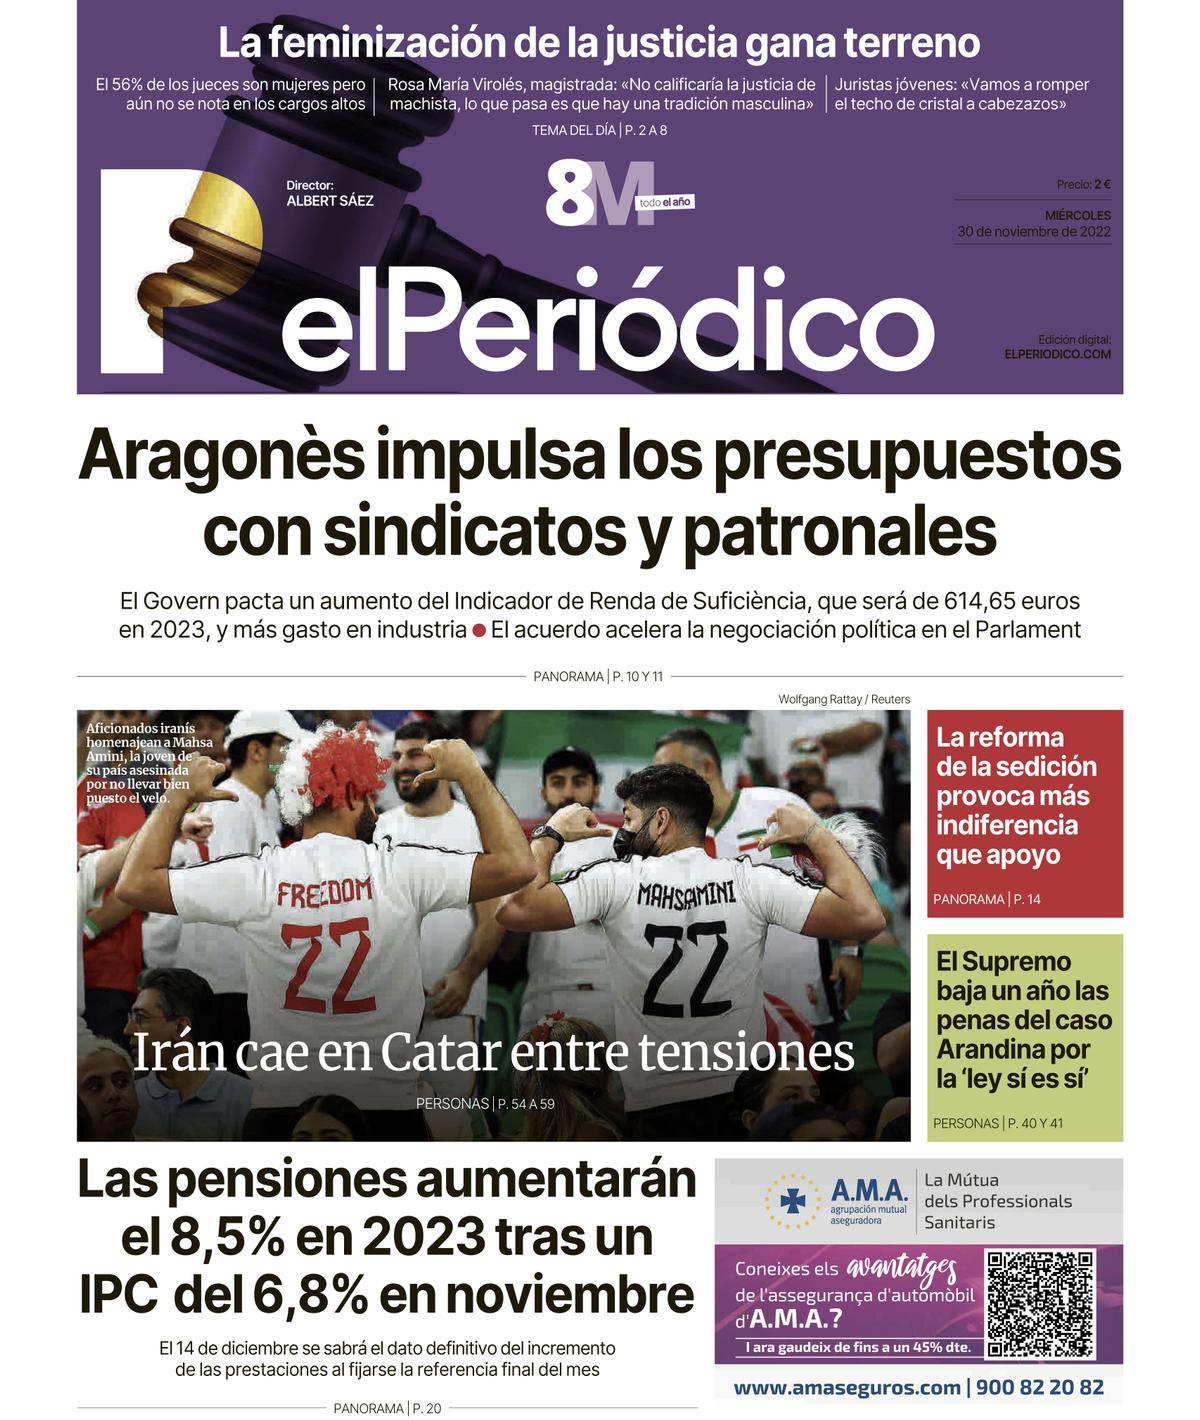 La portada de EL PERIÓDICO del 30 de noviembre de 2022